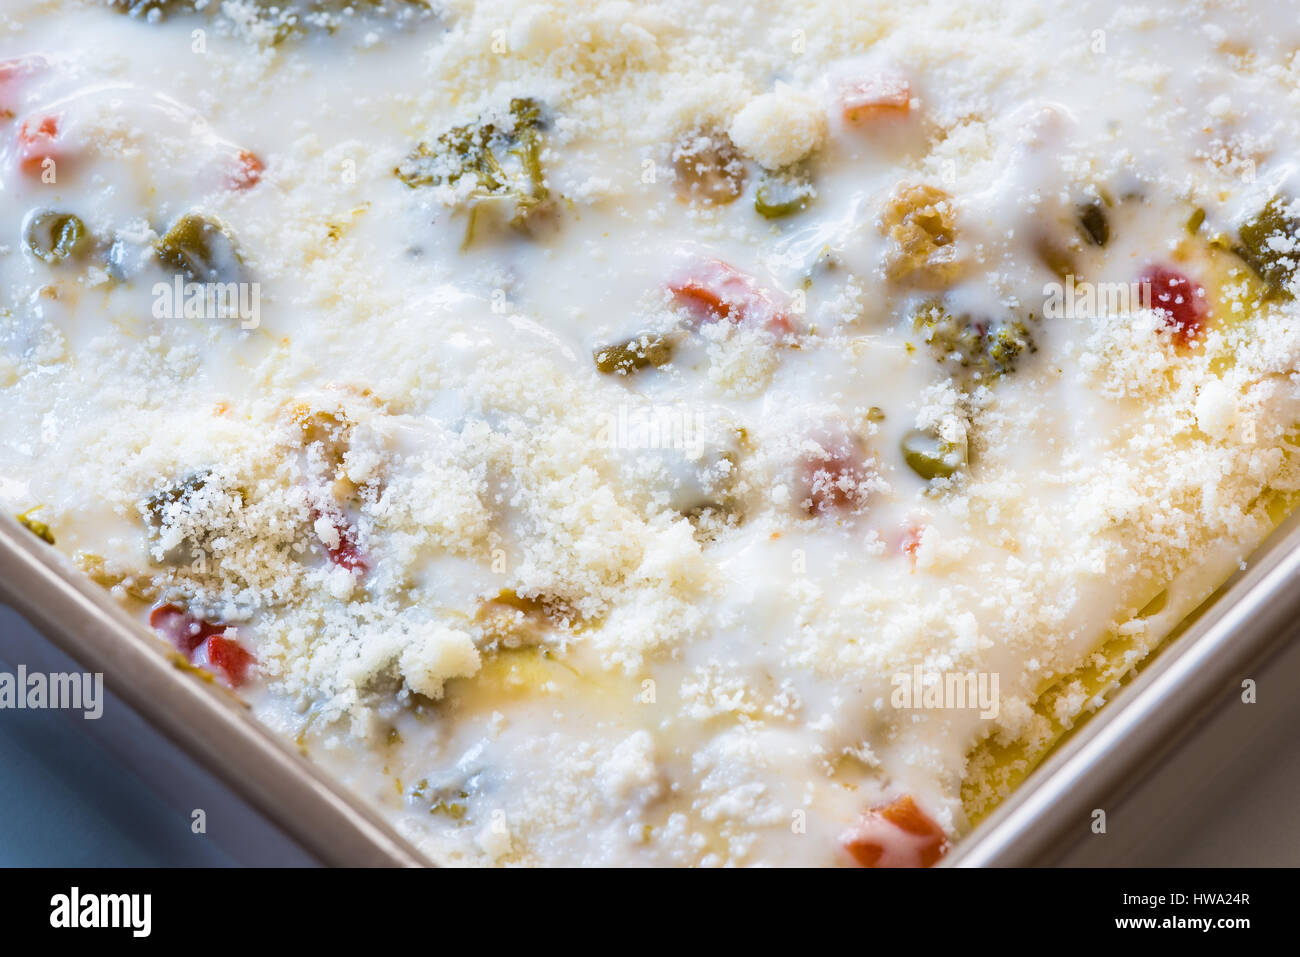 Lasagnette vegetariane. Chiudere su di una teglia da forno con le lasagne fatte in casa Foto Stock